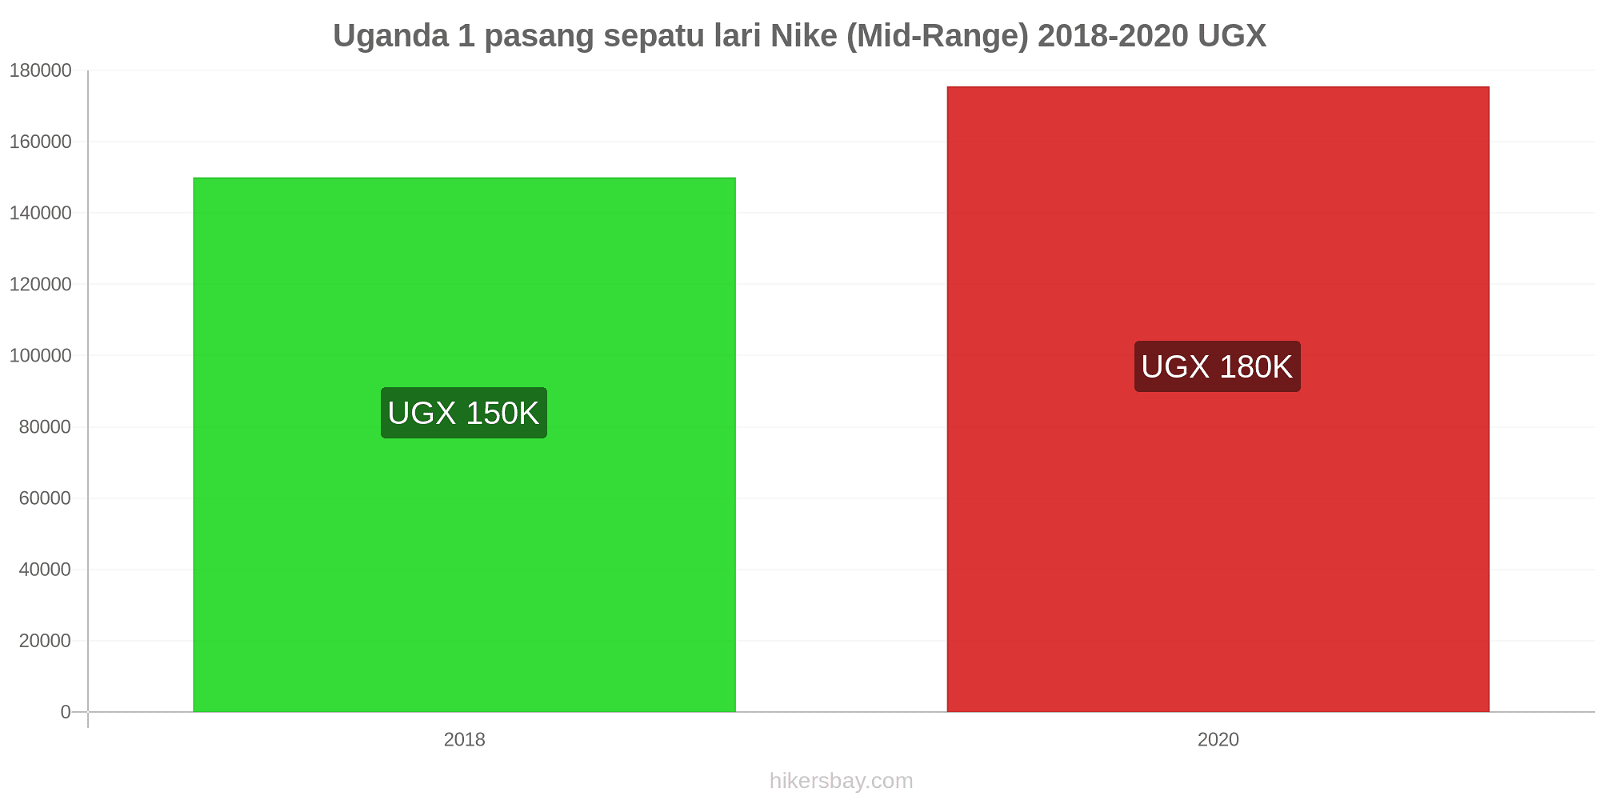 Uganda perubahan harga 1 pasang sepatu lari Nike (Mid-Range) hikersbay.com